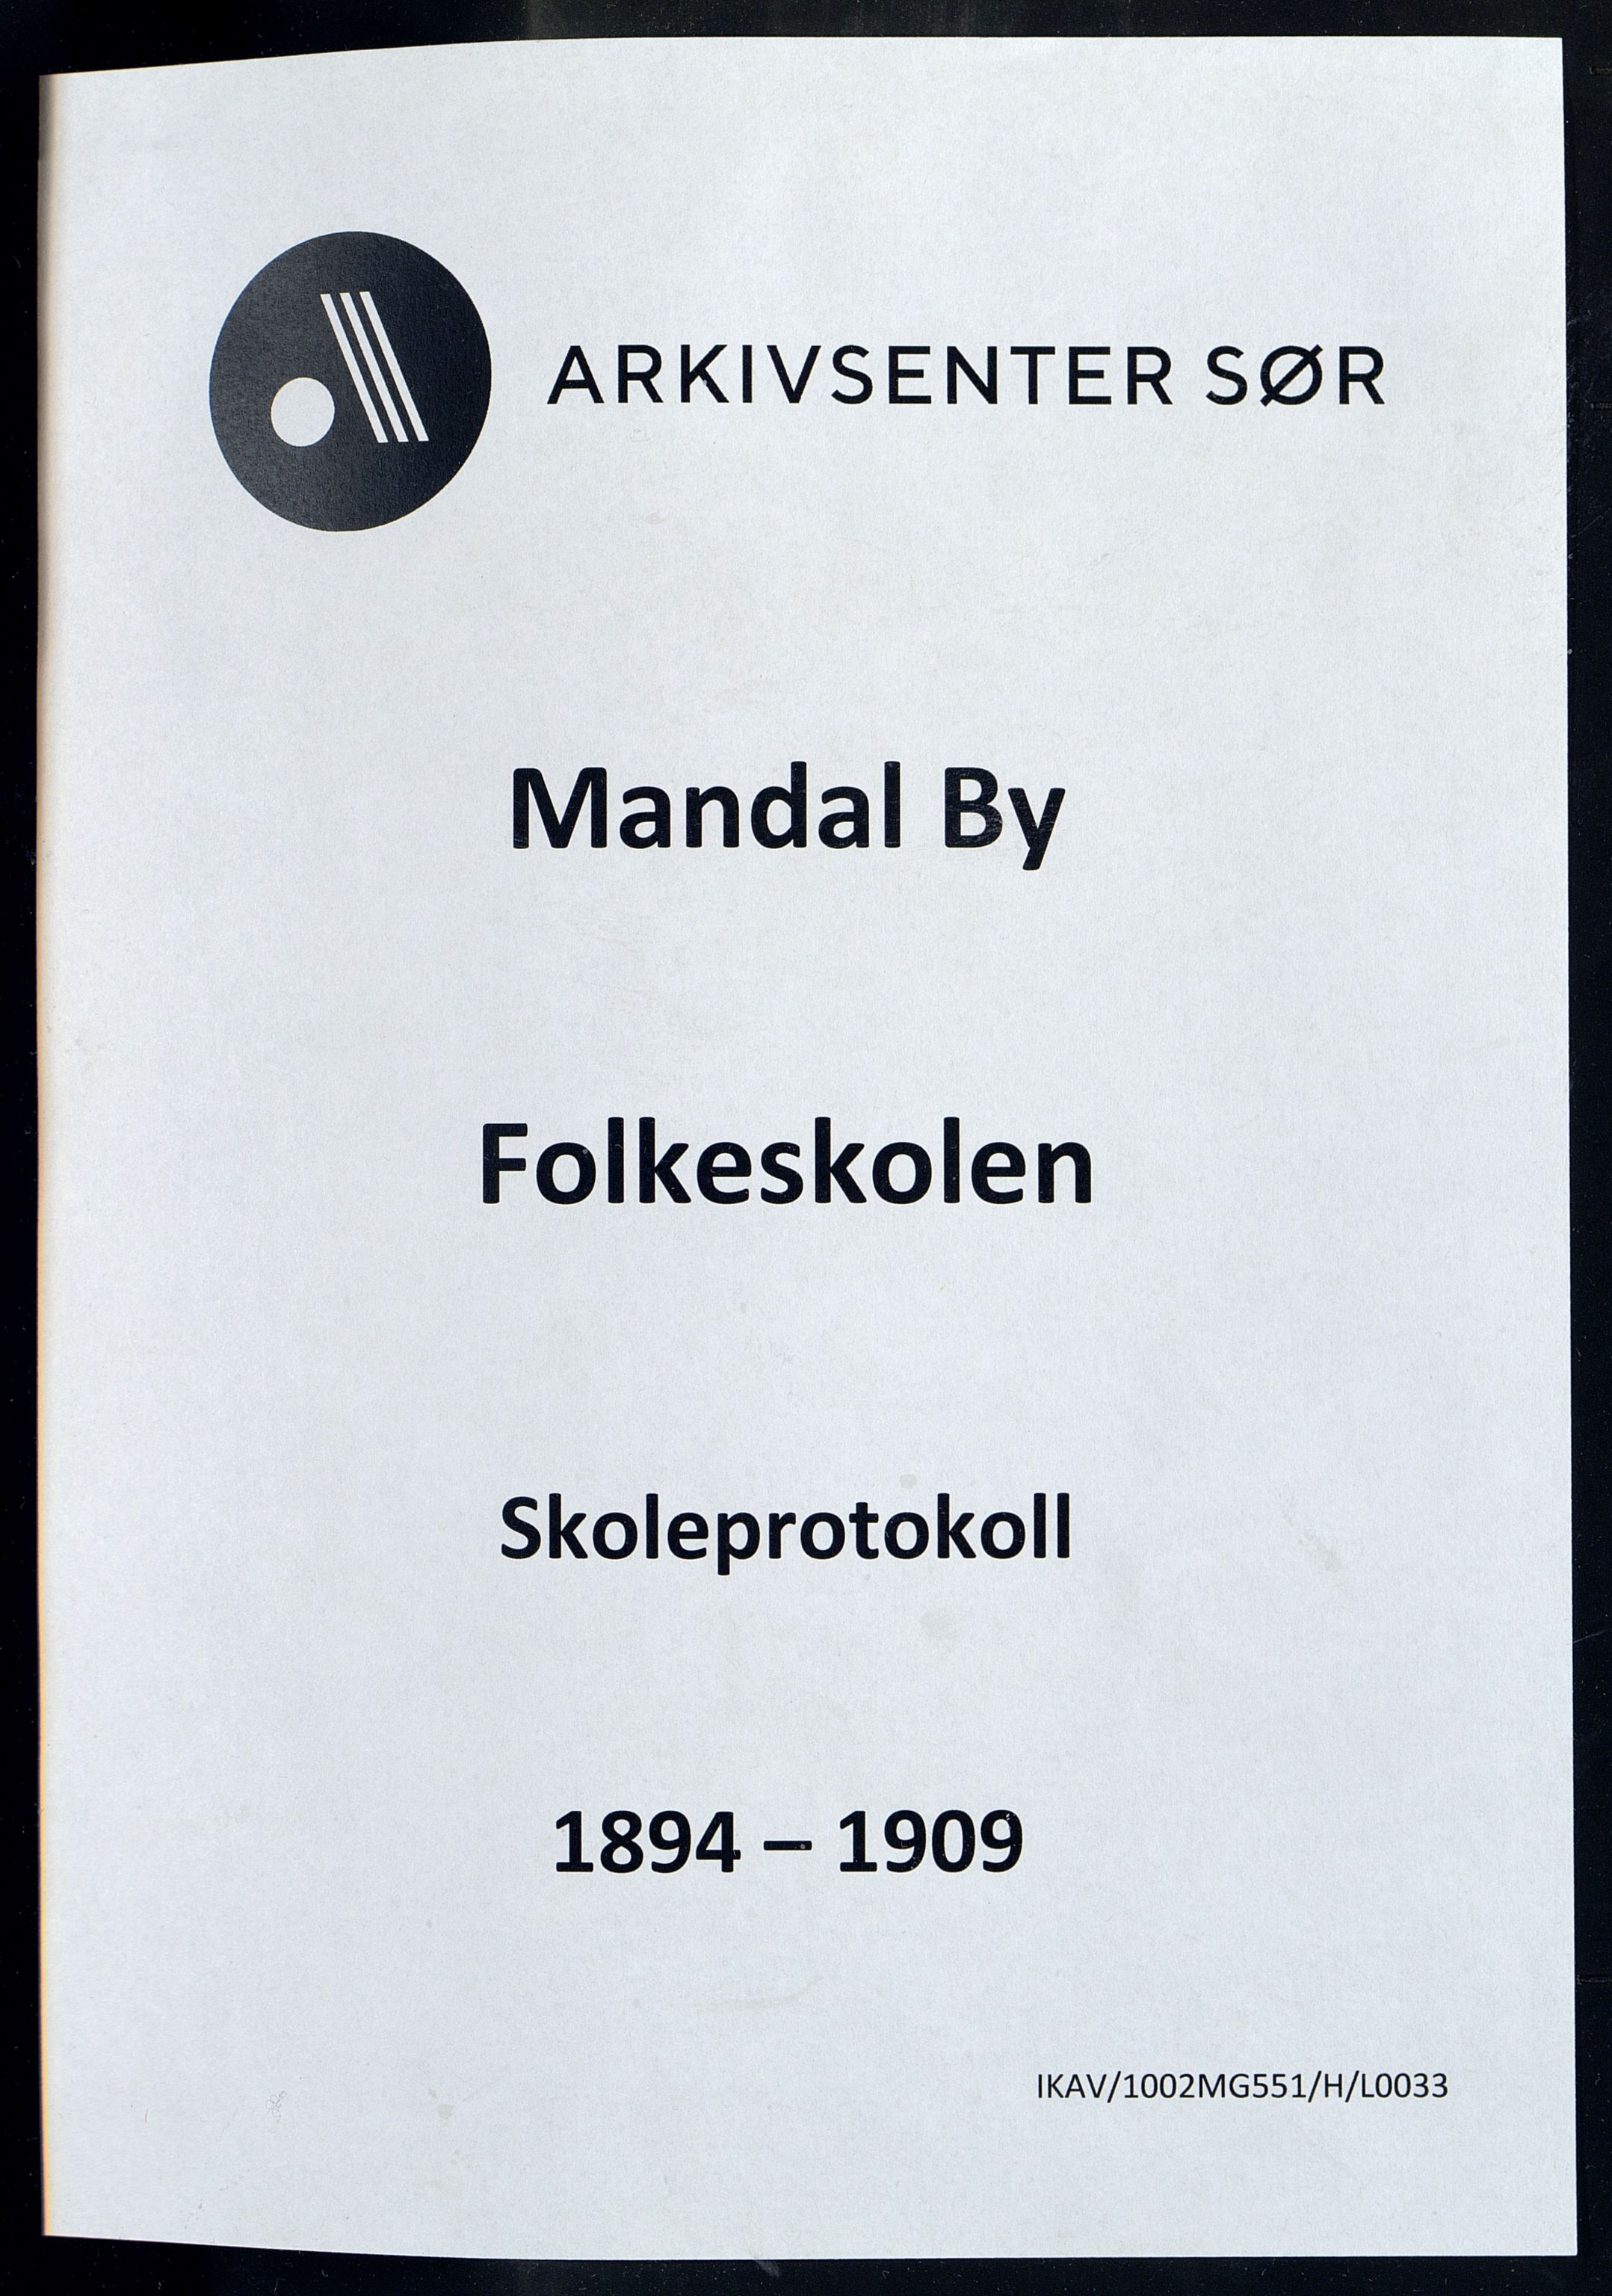 Mandal By - Mandal Allmueskole/Folkeskole/Skole, IKAV/1002MG551/H/L0033: Skoleprotokoll, 1894-1909